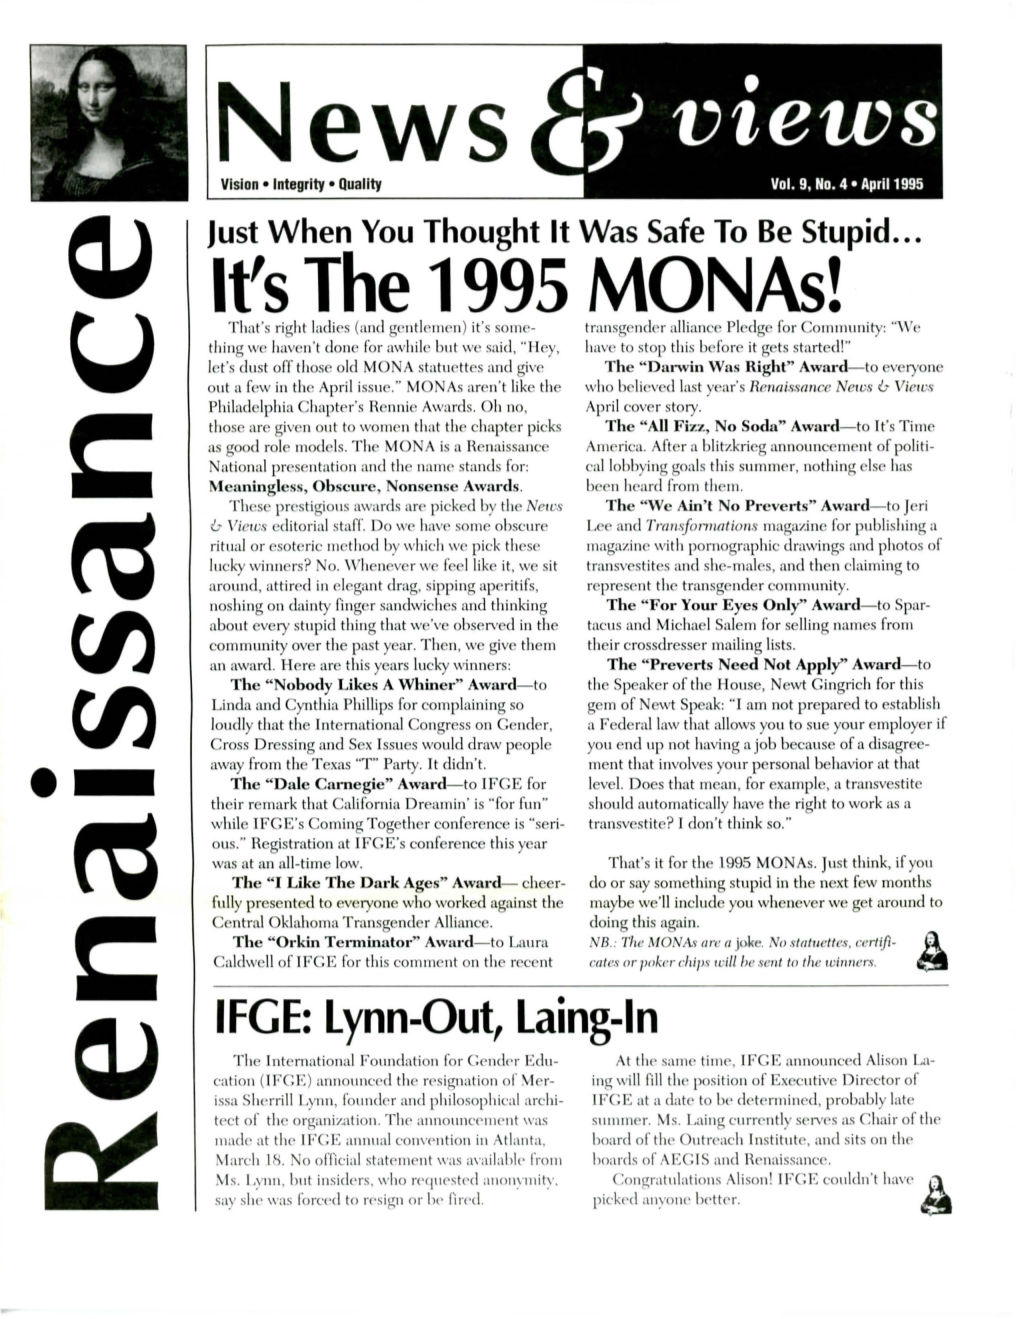 It's the 1995 Monas!